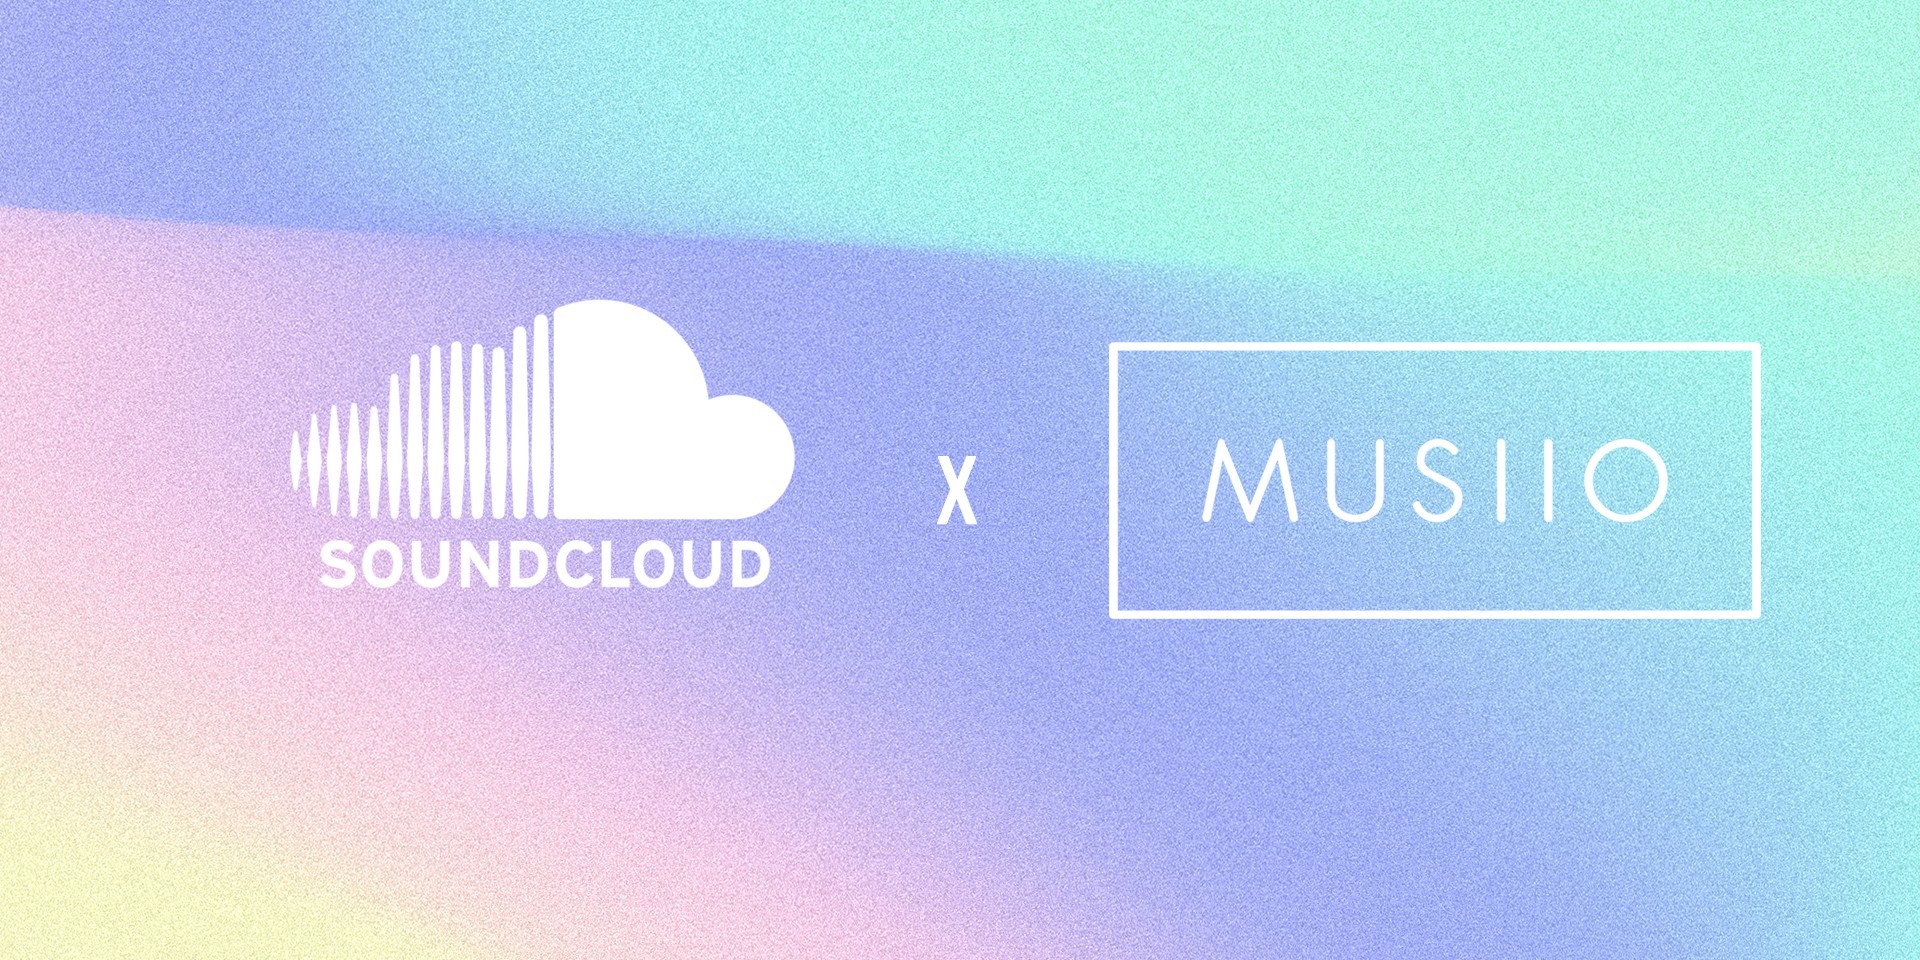 SoundCloud Chính Thức Mua Lại Musiio - Nền Tảng Phân Tích Dữ Liệu Âm Nhạc Bằng AI